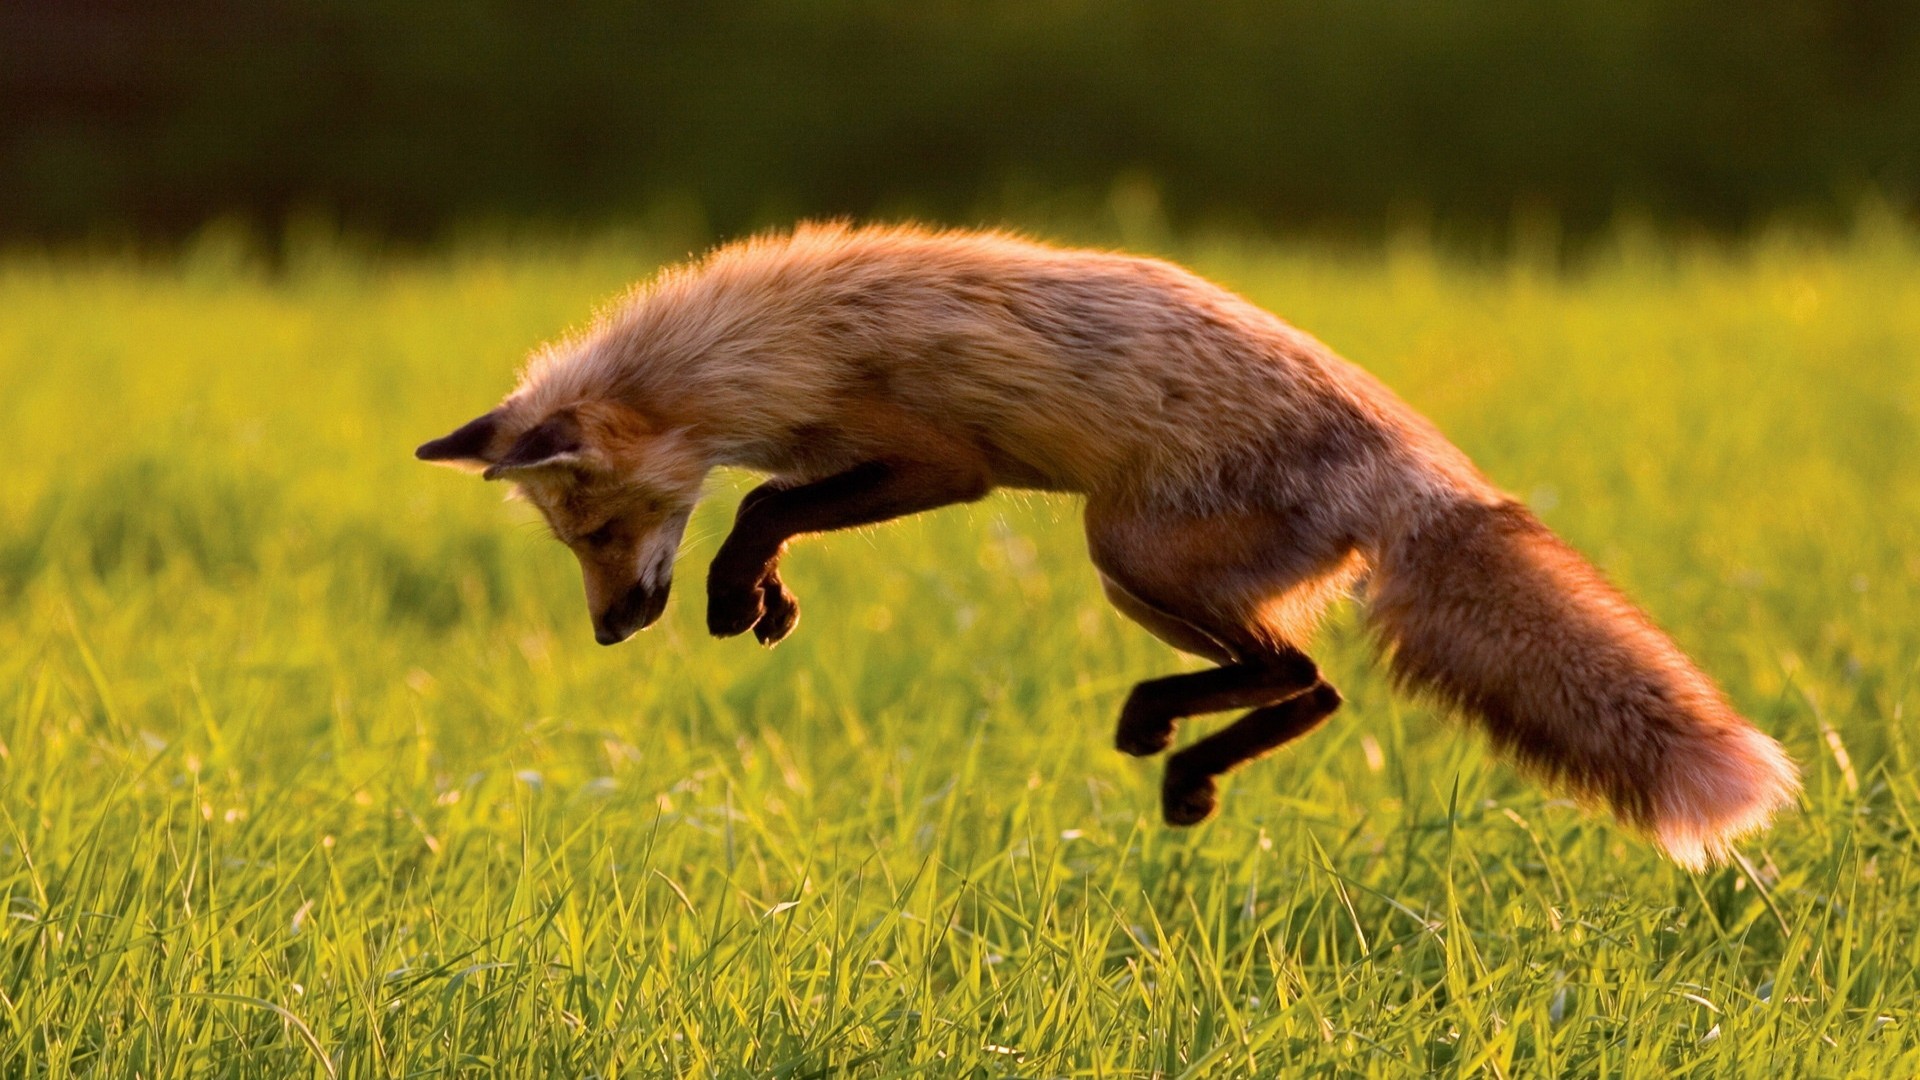 лиса, красная, зеленая трава, прыгает, солнечный день, дикая природа, Red Fox, green grass, jumping, sunny day, wild nature (horizontal)